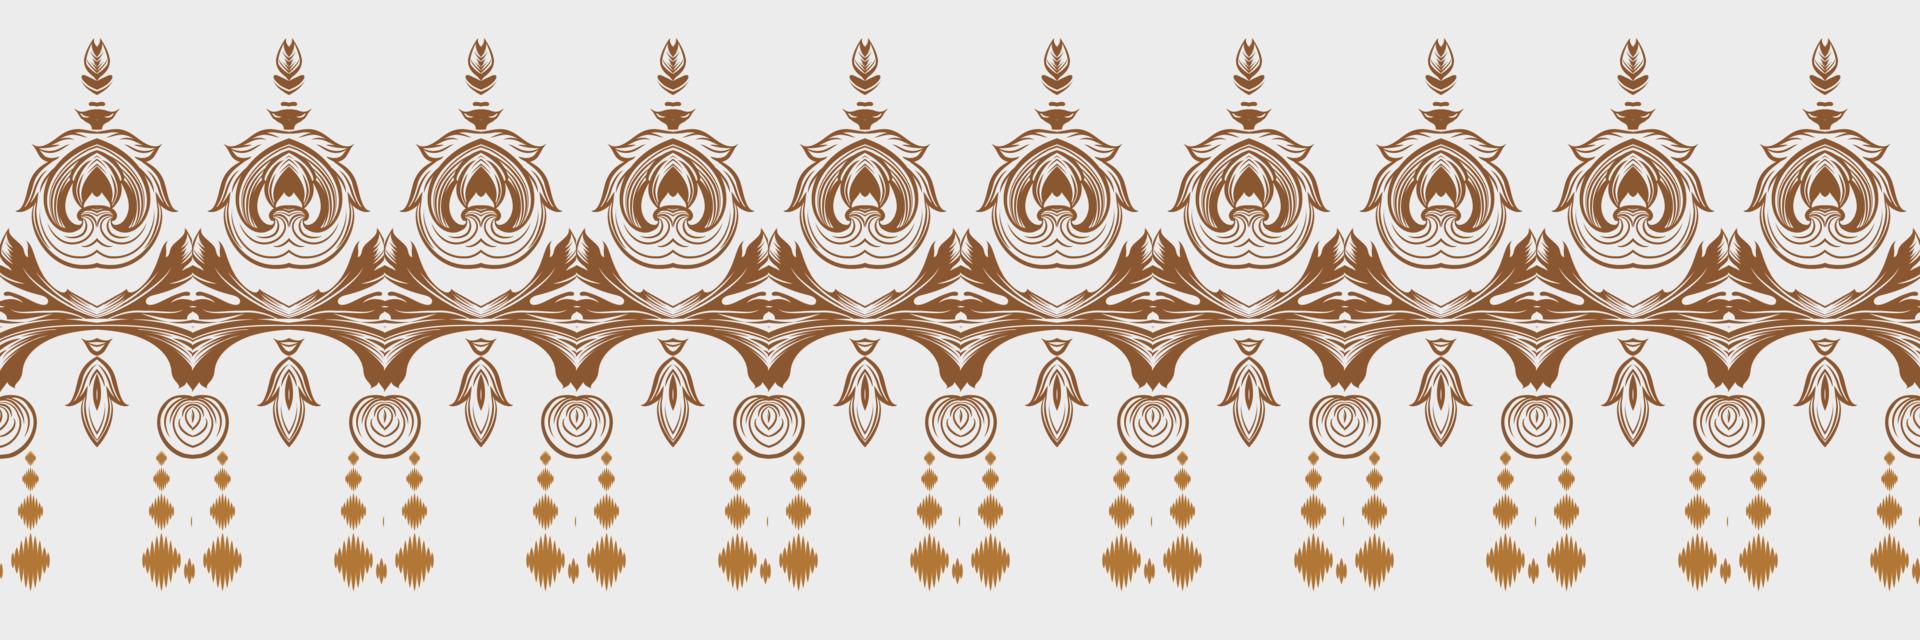 motivo textil batik ikat diseño de vector digital de patrones sin fisuras para imprimir saree kurti borneo borde de tela símbolos de pincel muestras con estilo